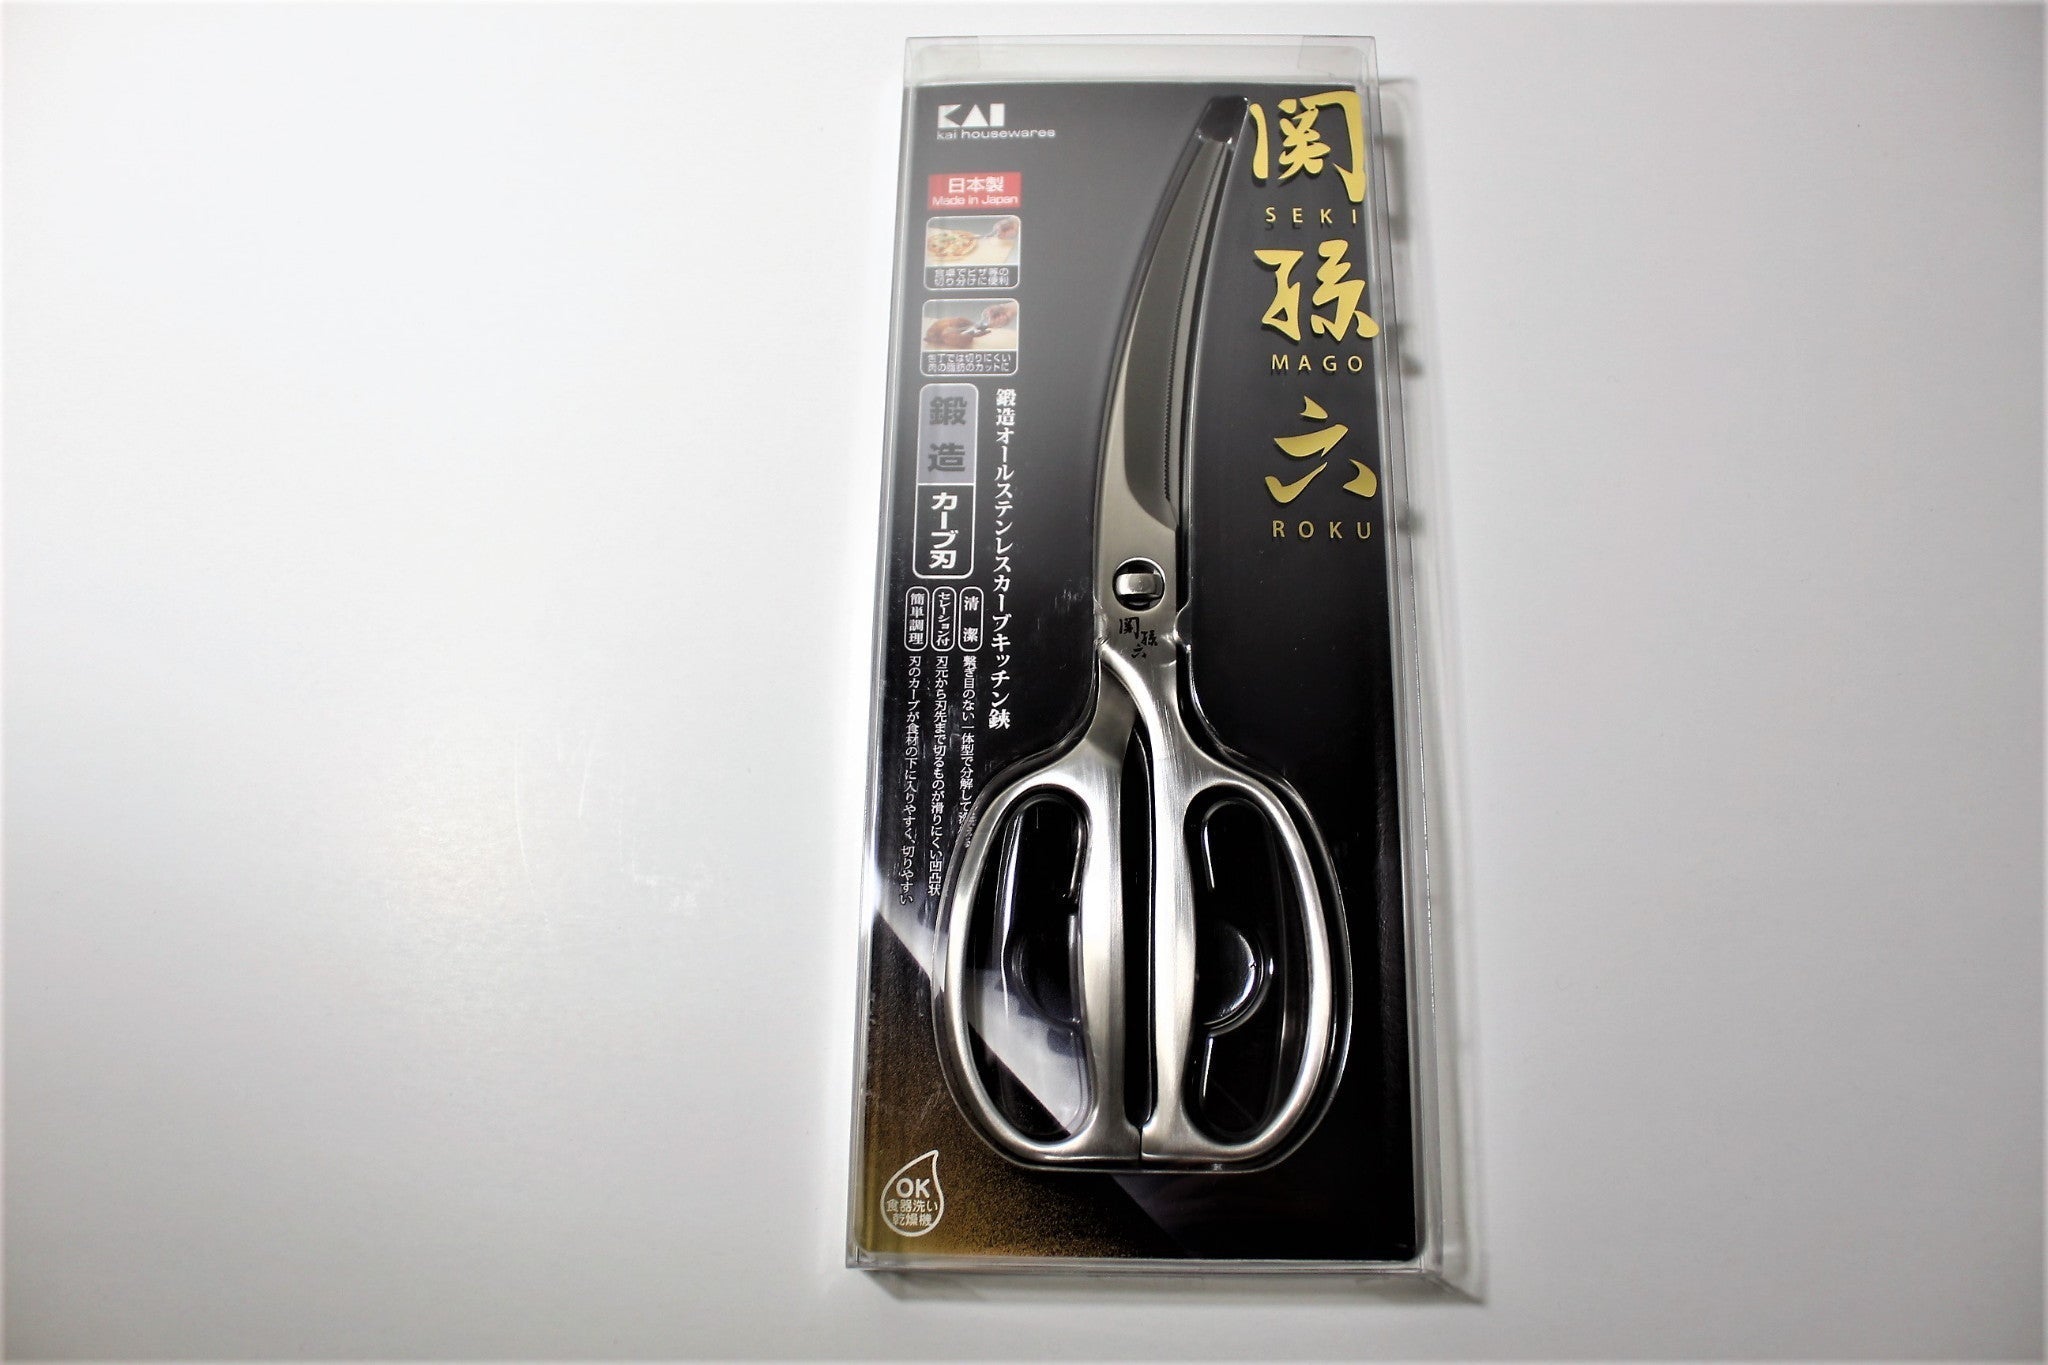 Kai Seki No Magoroku Stainless Steel Curved Kitchen Shears DH3346